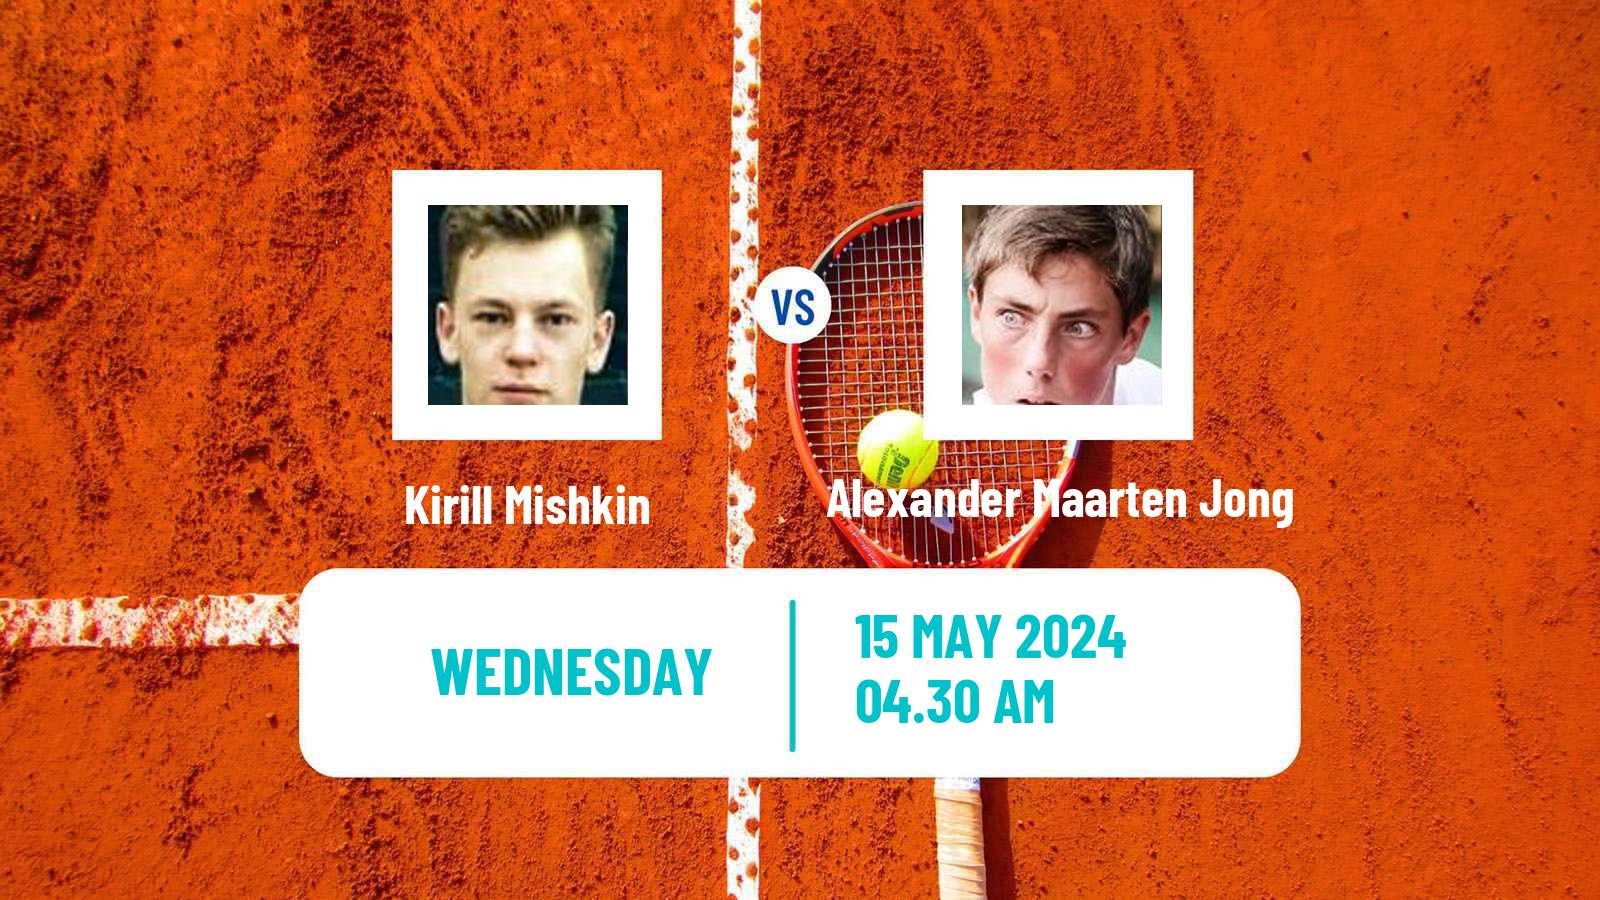 Tennis ITF M15 Prijedor Men Kirill Mishkin - Alexander Maarten Jong